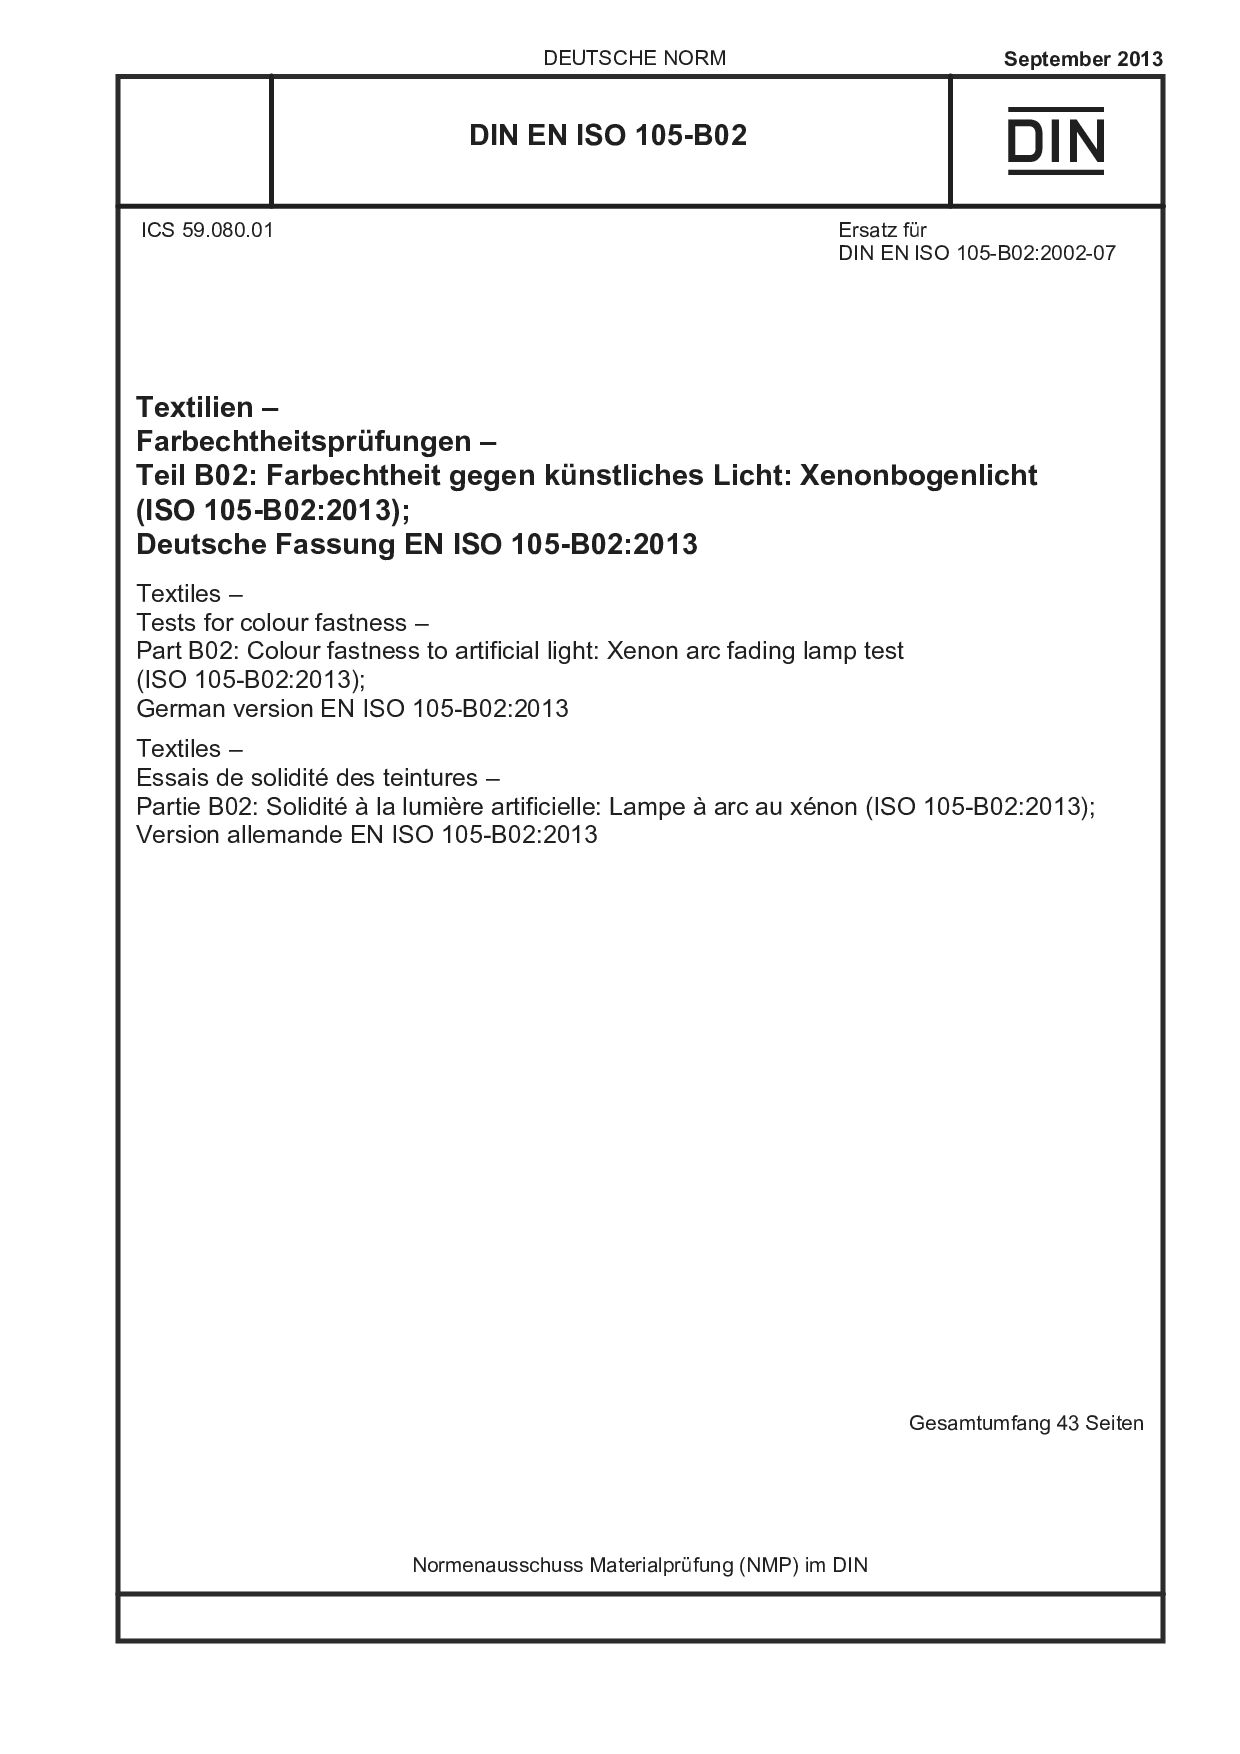 DIN EN ISO 105-B02:2013